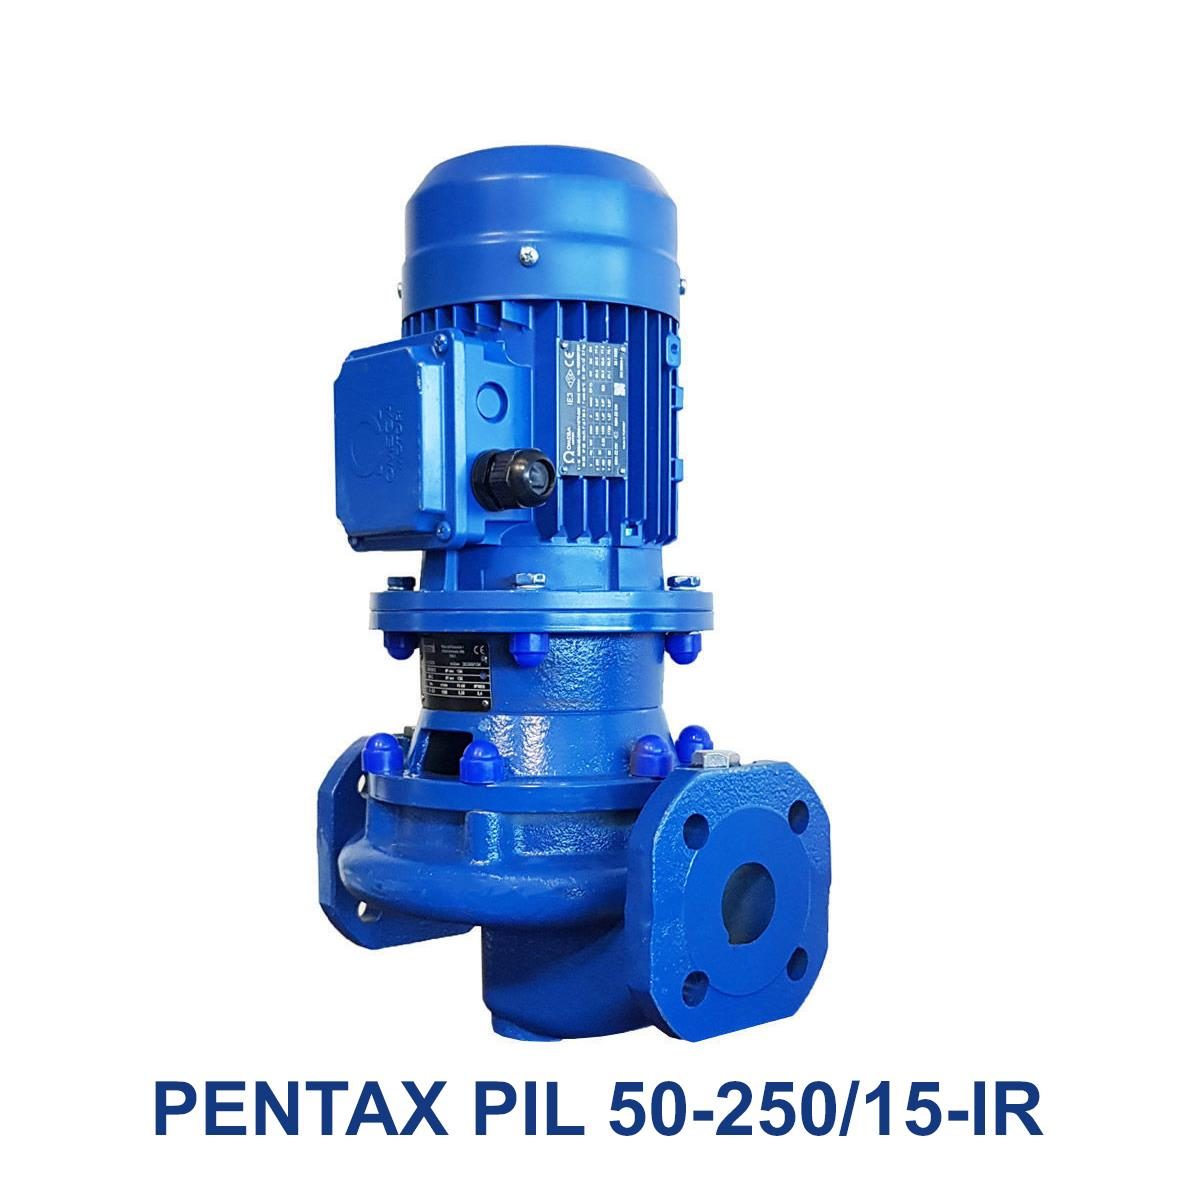 PENTAX-PIL-50-250-15-IR